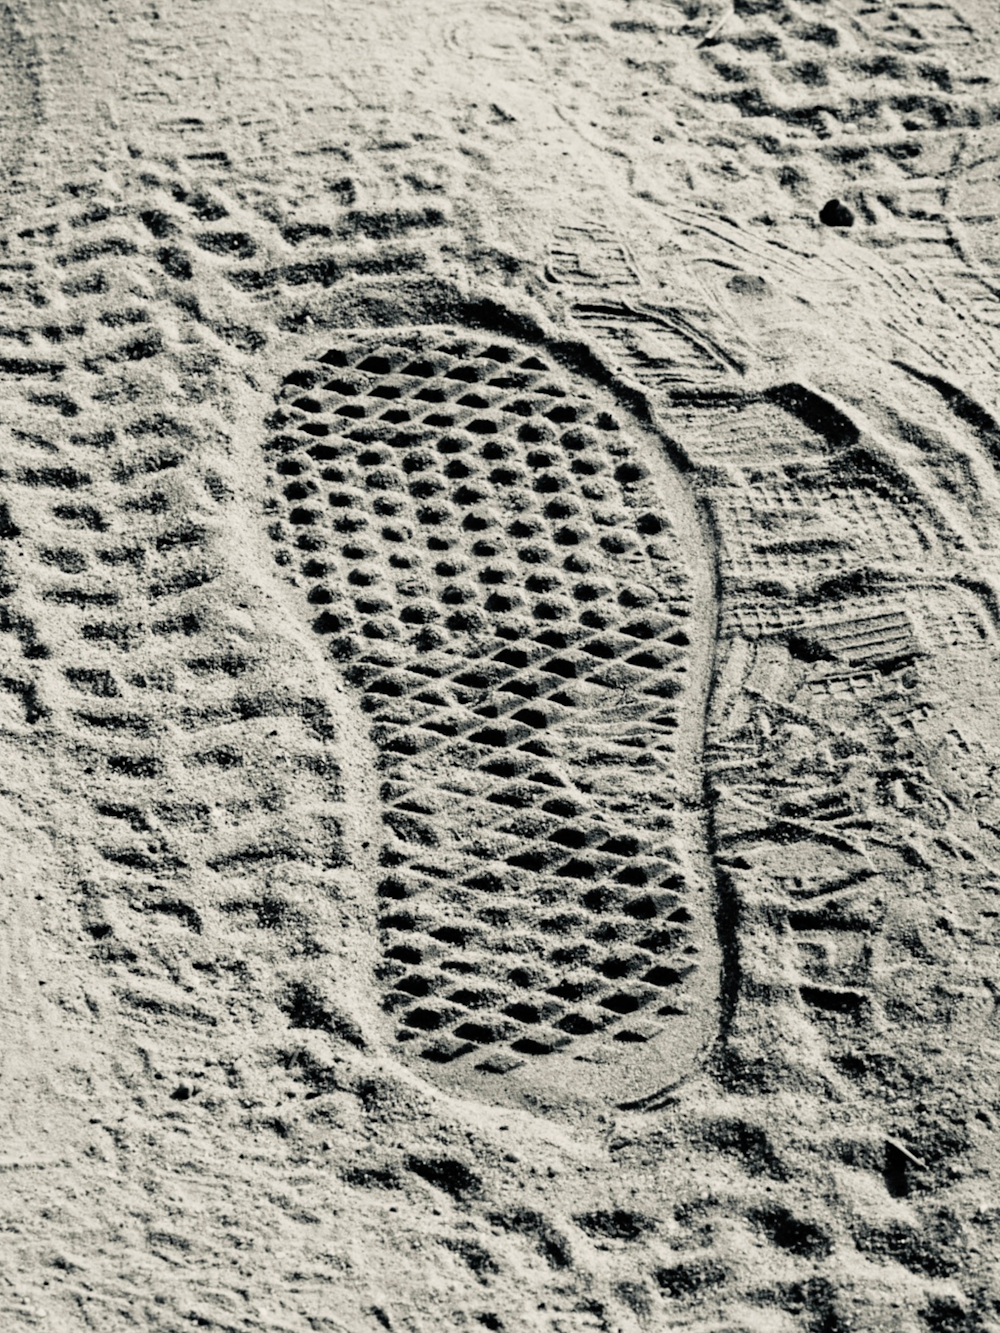 as marcas dos pés de uma pessoa na areia de uma praia